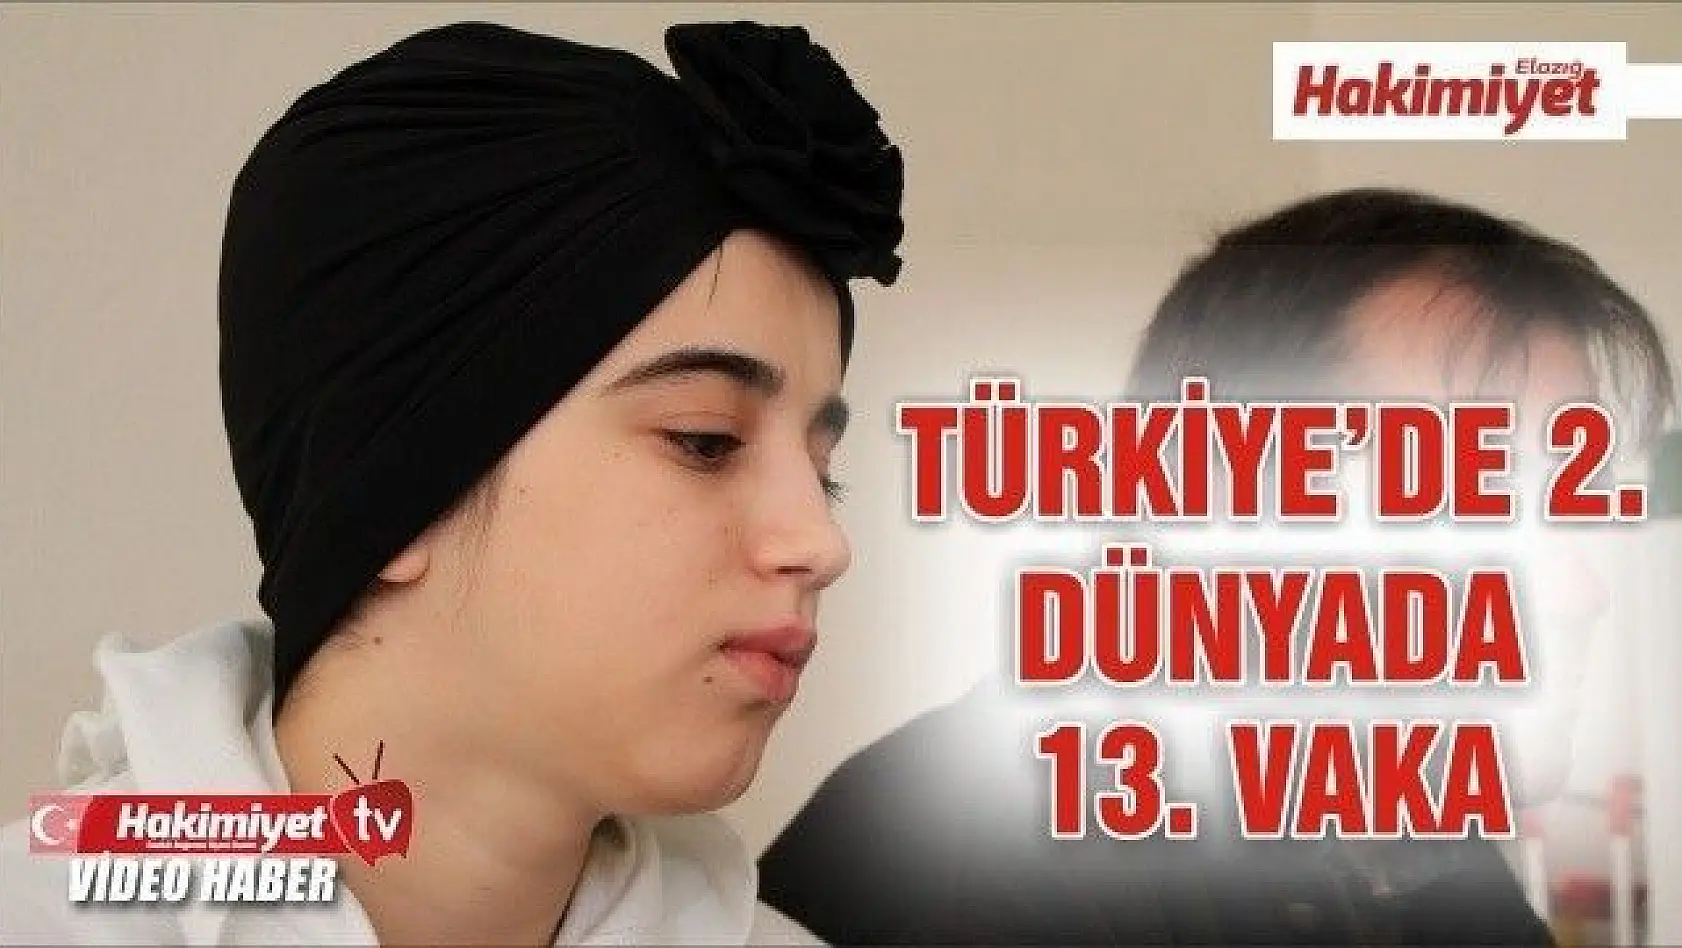 İmmünglobülin G4 hastalığına yakalanan Ayşe, Türkiye'de 2, dünyada 13'üncü vaka oldu